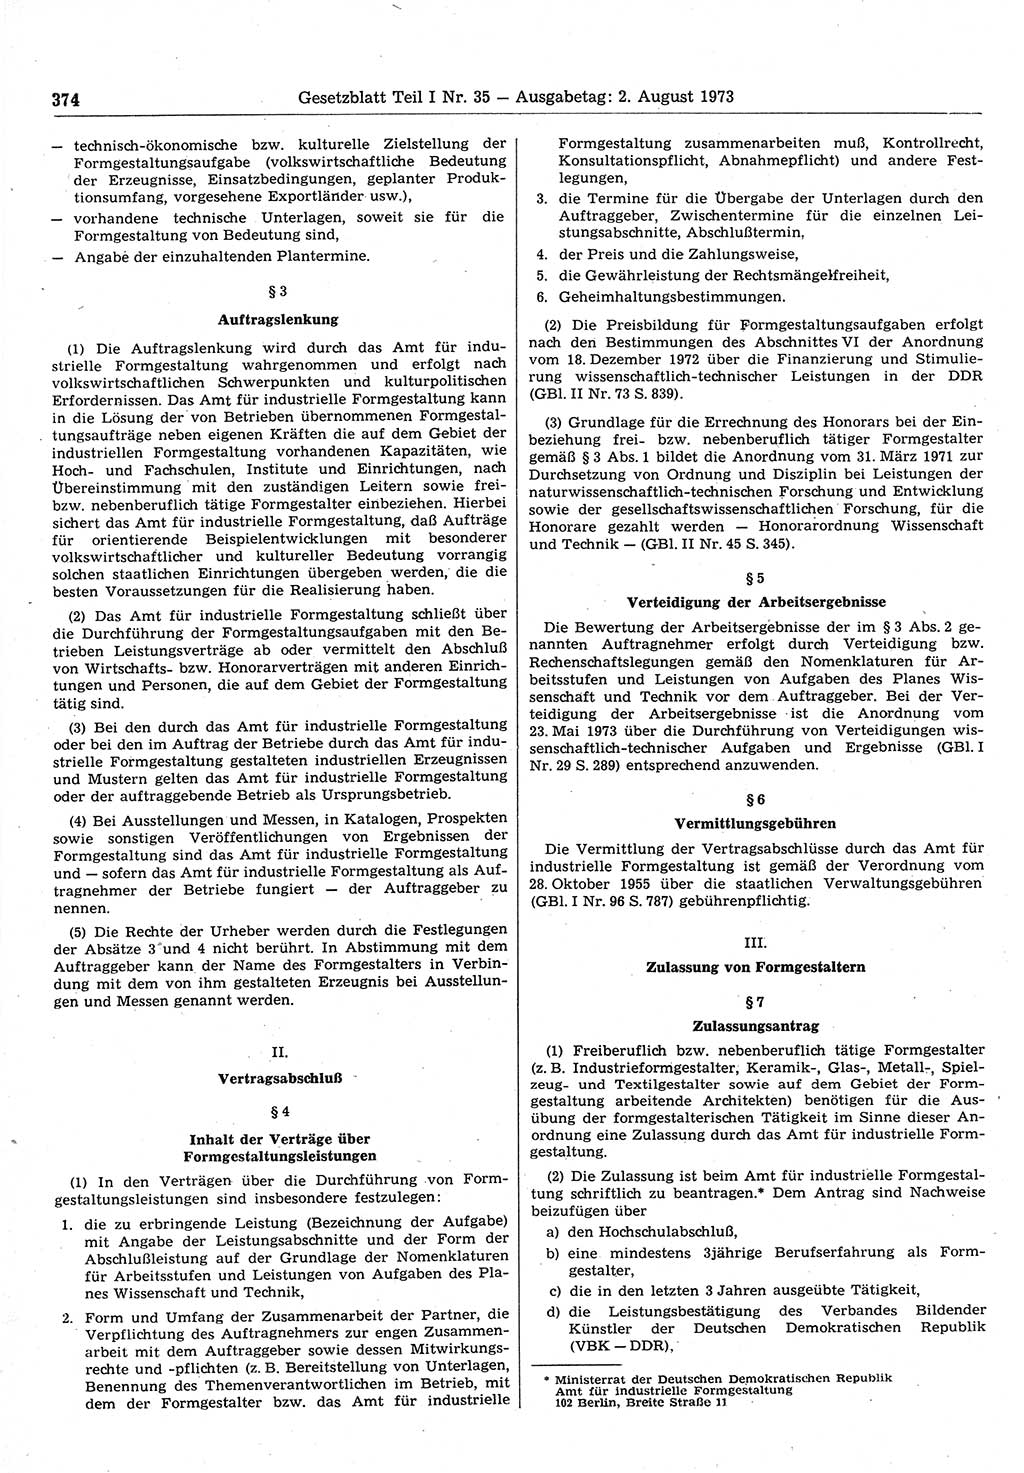 Gesetzblatt (GBl.) der Deutschen Demokratischen Republik (DDR) Teil Ⅰ 1973, Seite 374 (GBl. DDR Ⅰ 1973, S. 374)